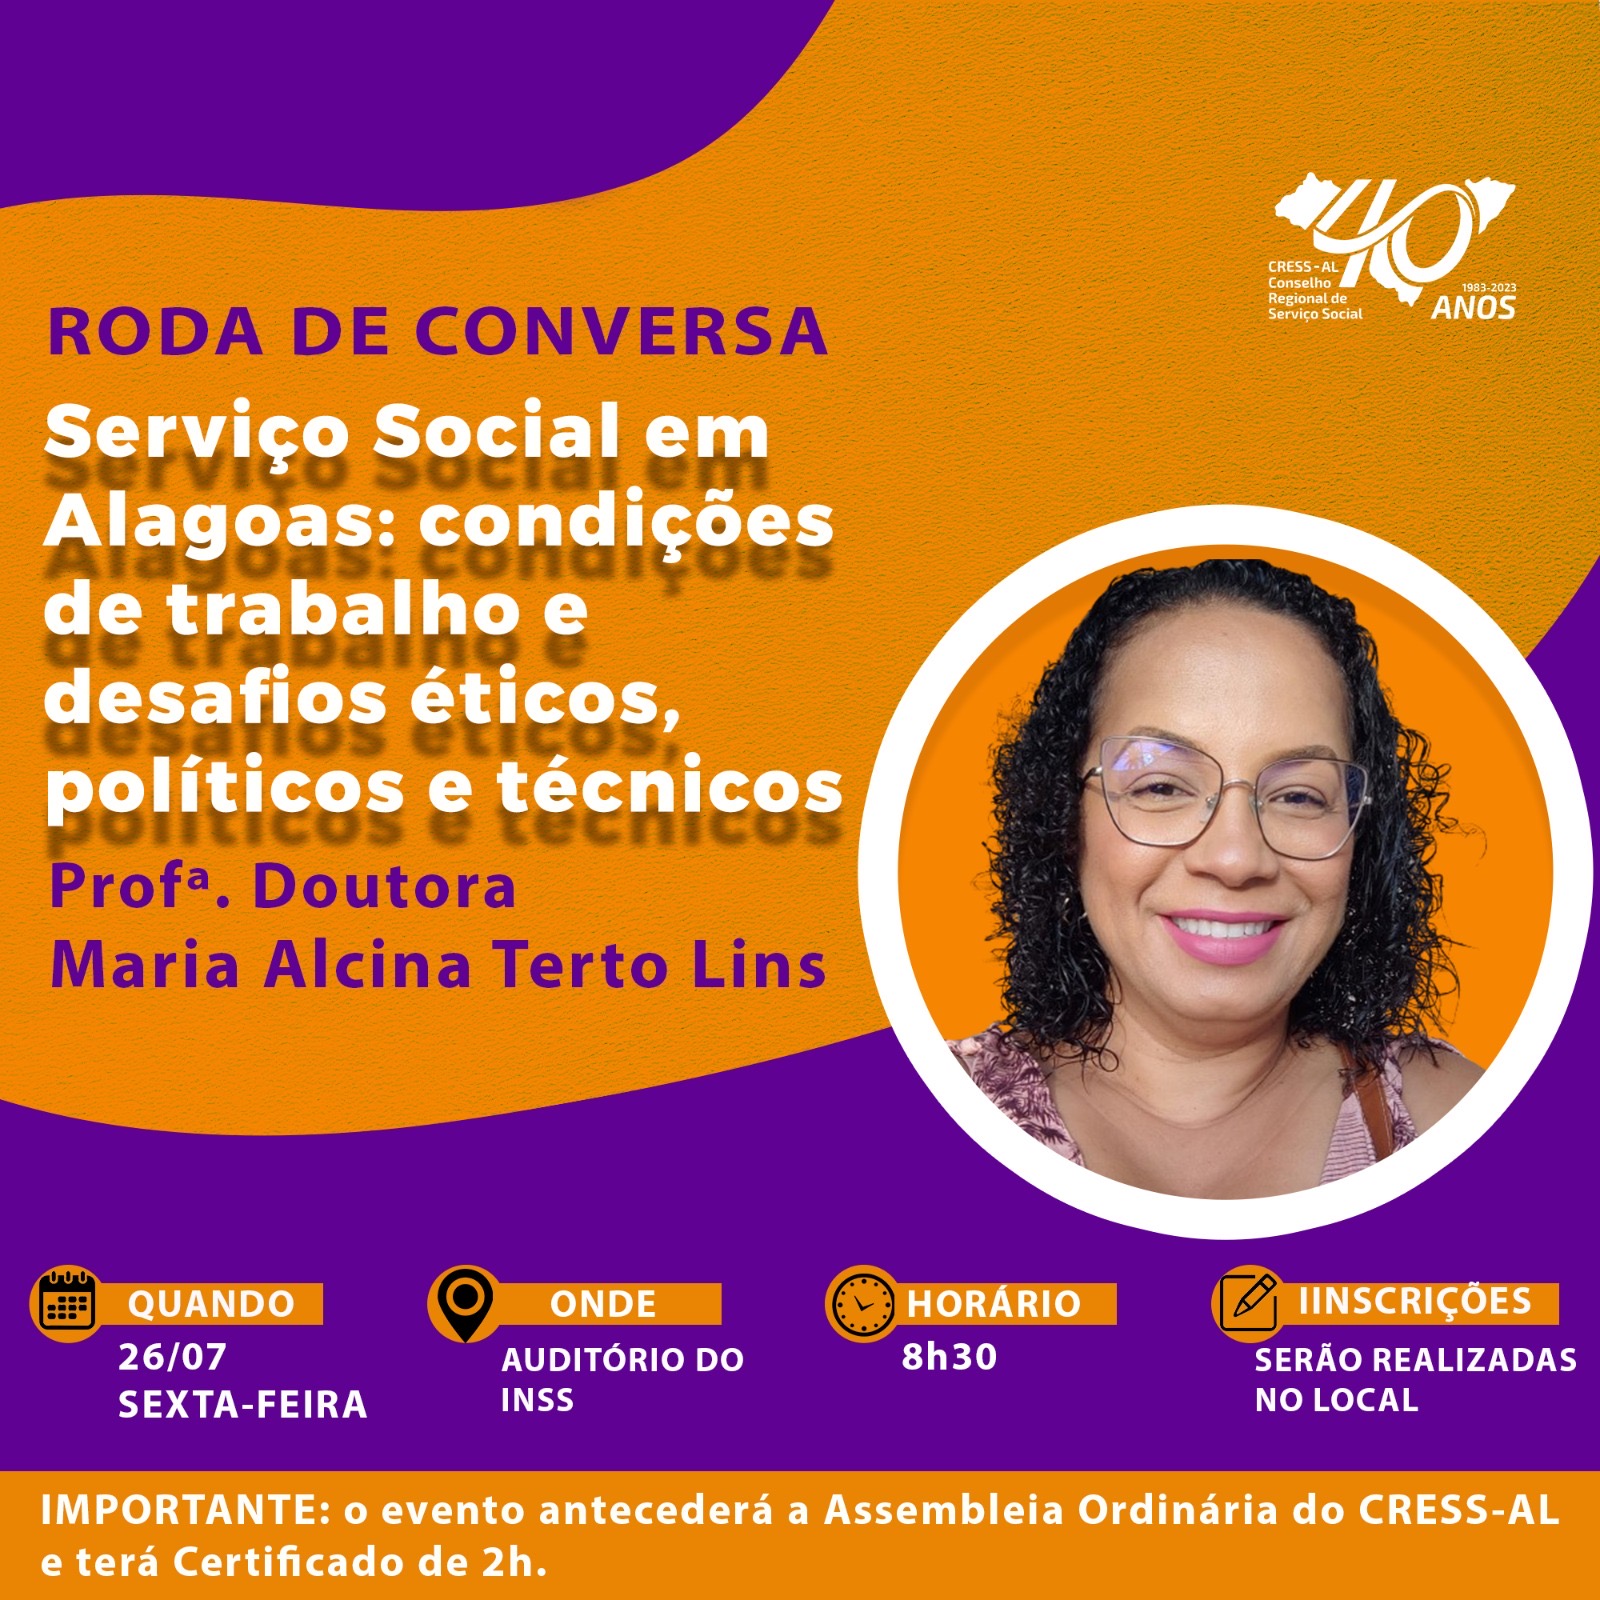 CRESS Alagoas promove Roda de Conversa para discutir condições de trabalho e desafios éticos, políticos e técnicos para serviço social